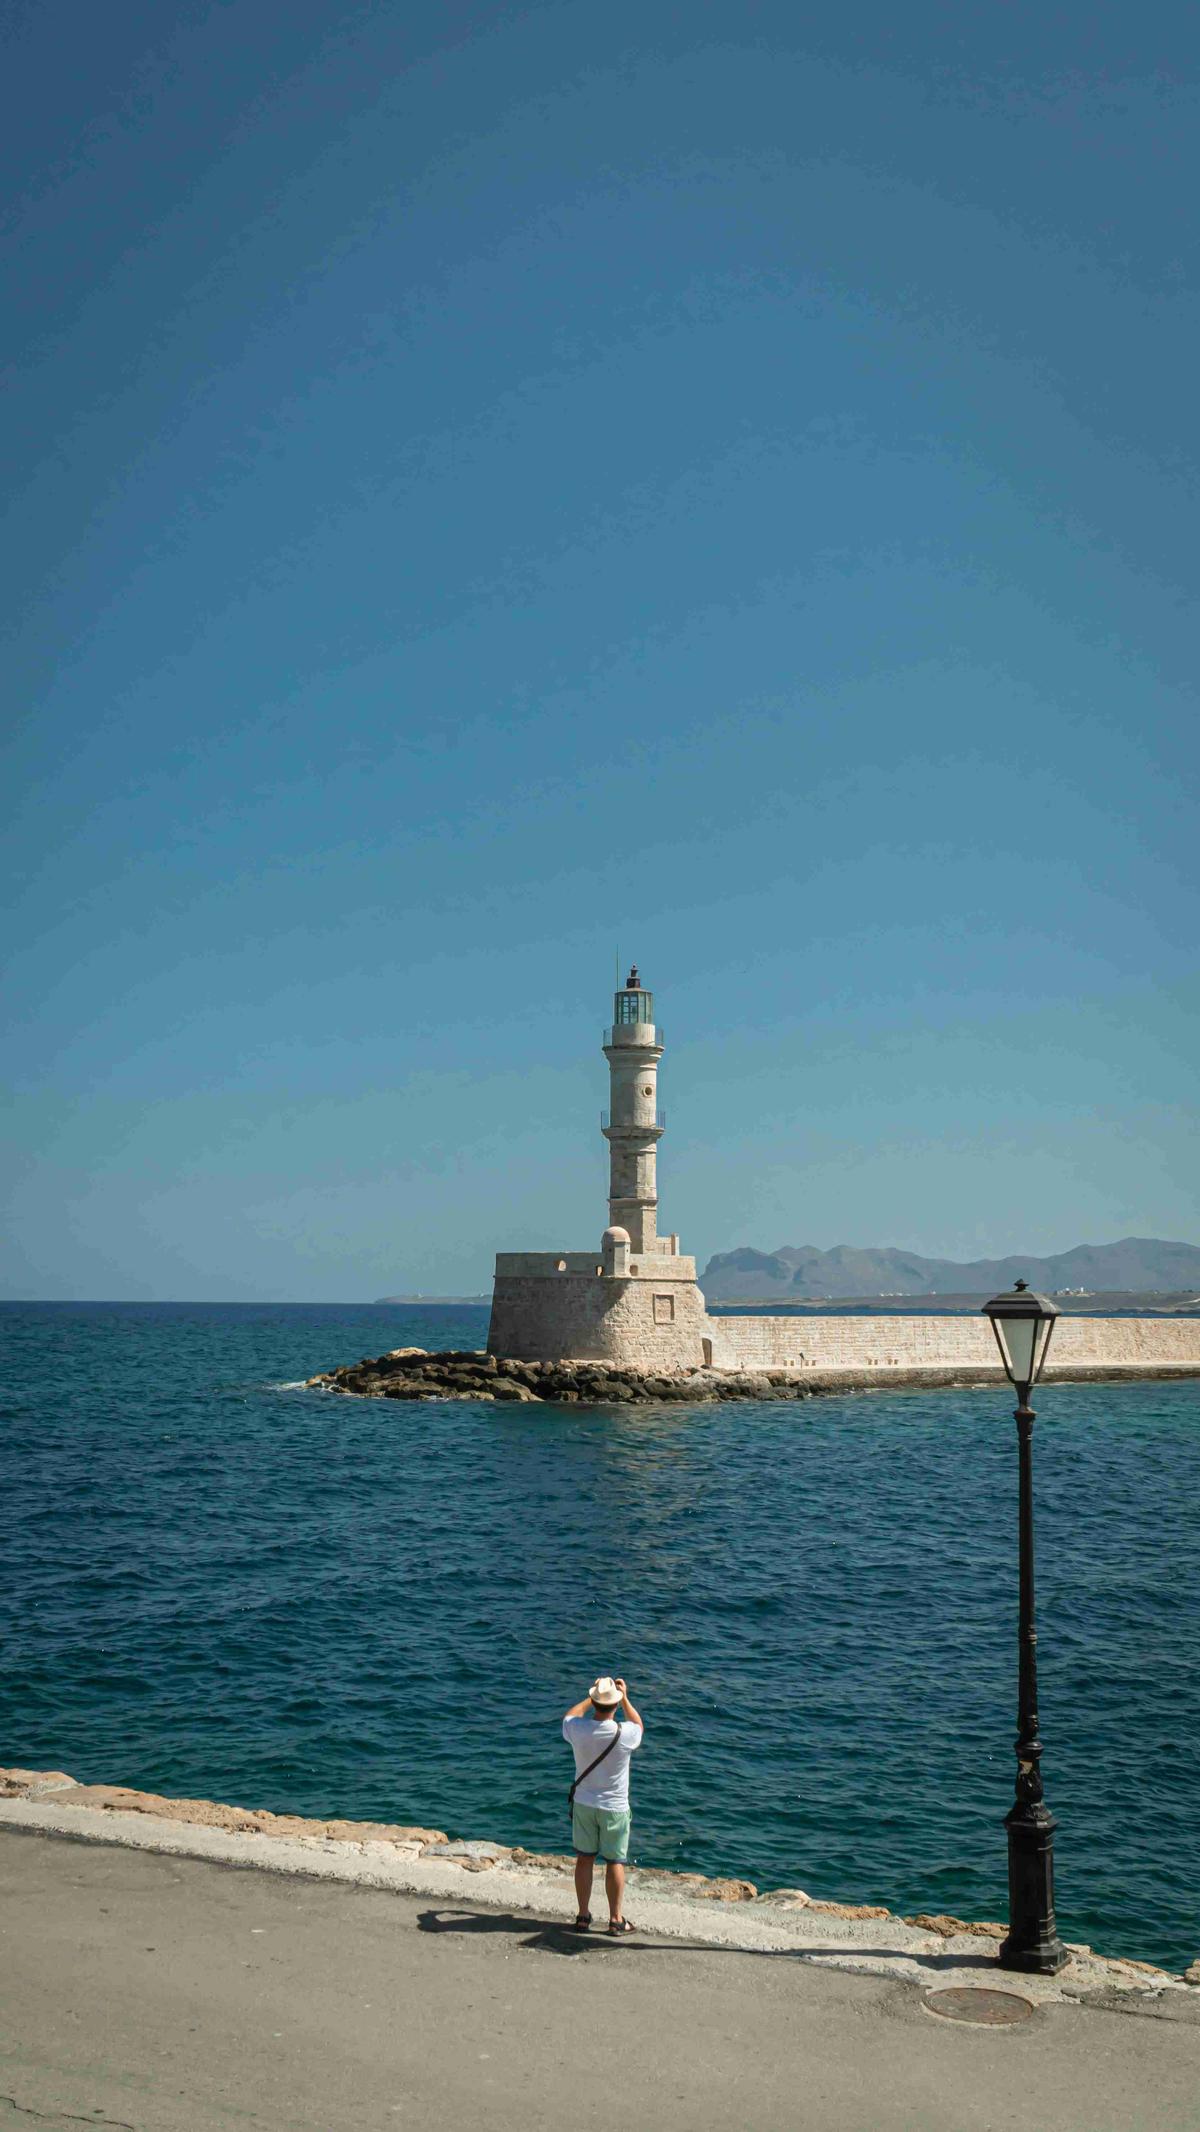 Человек, смотрящий на маяк у моря